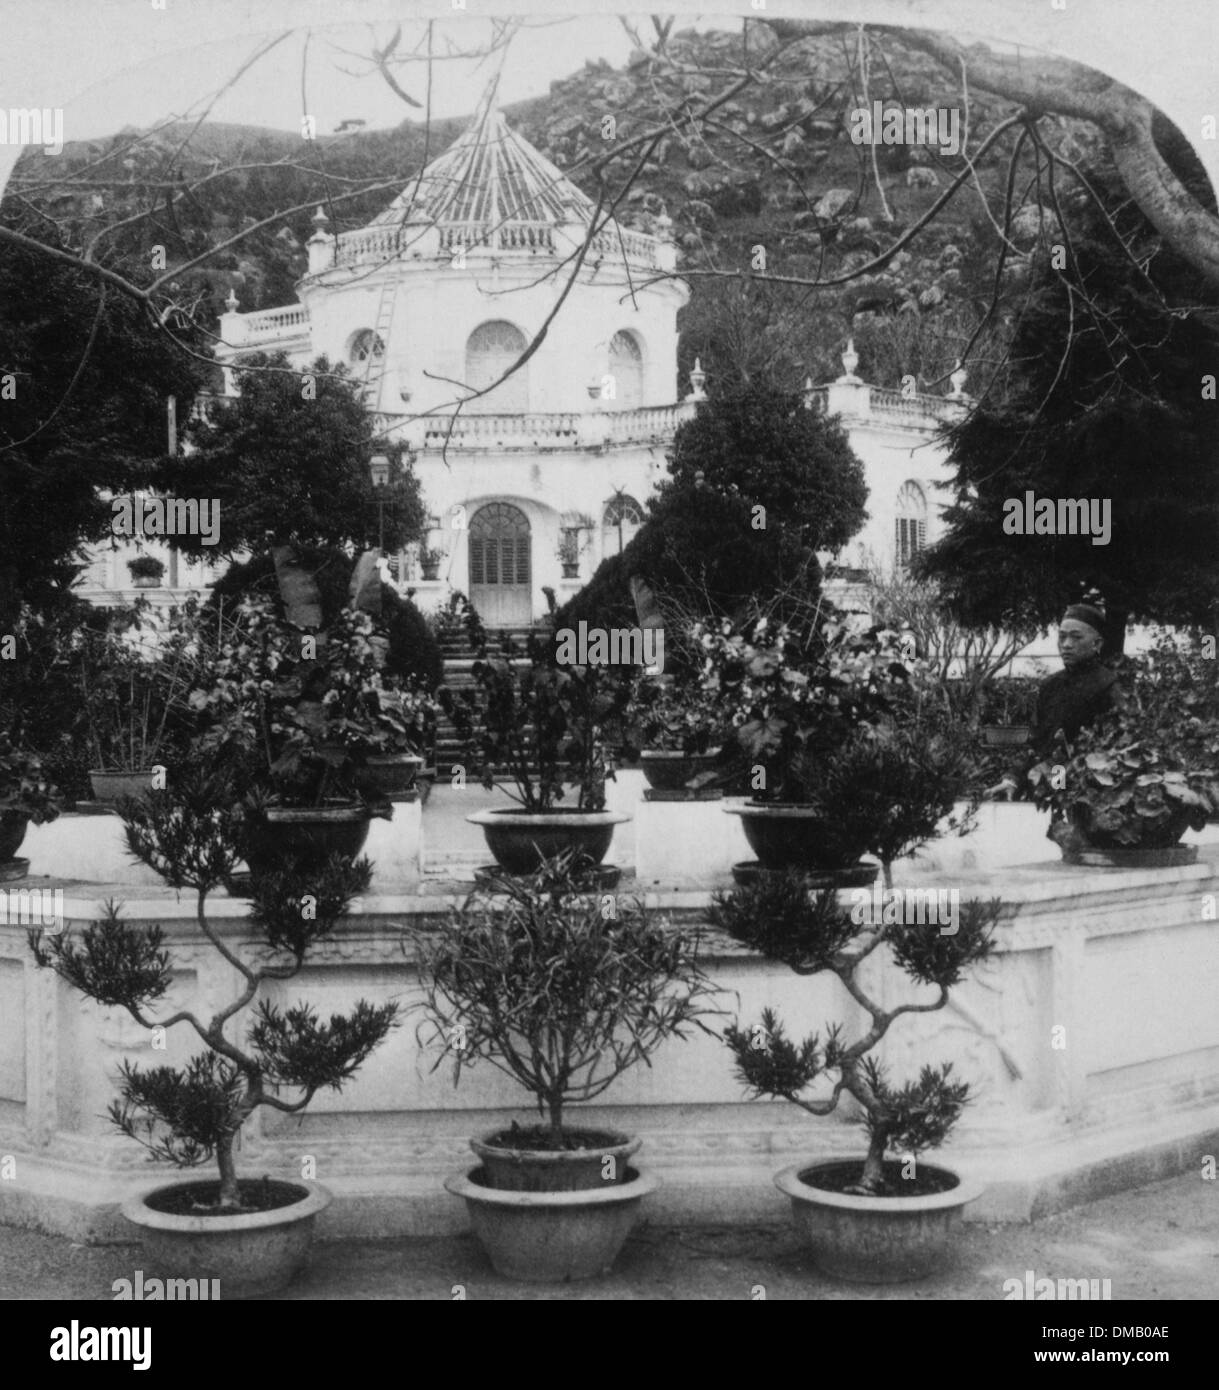 Palais d'été du gouverneur, Macao, vers 1900 Banque D'Images